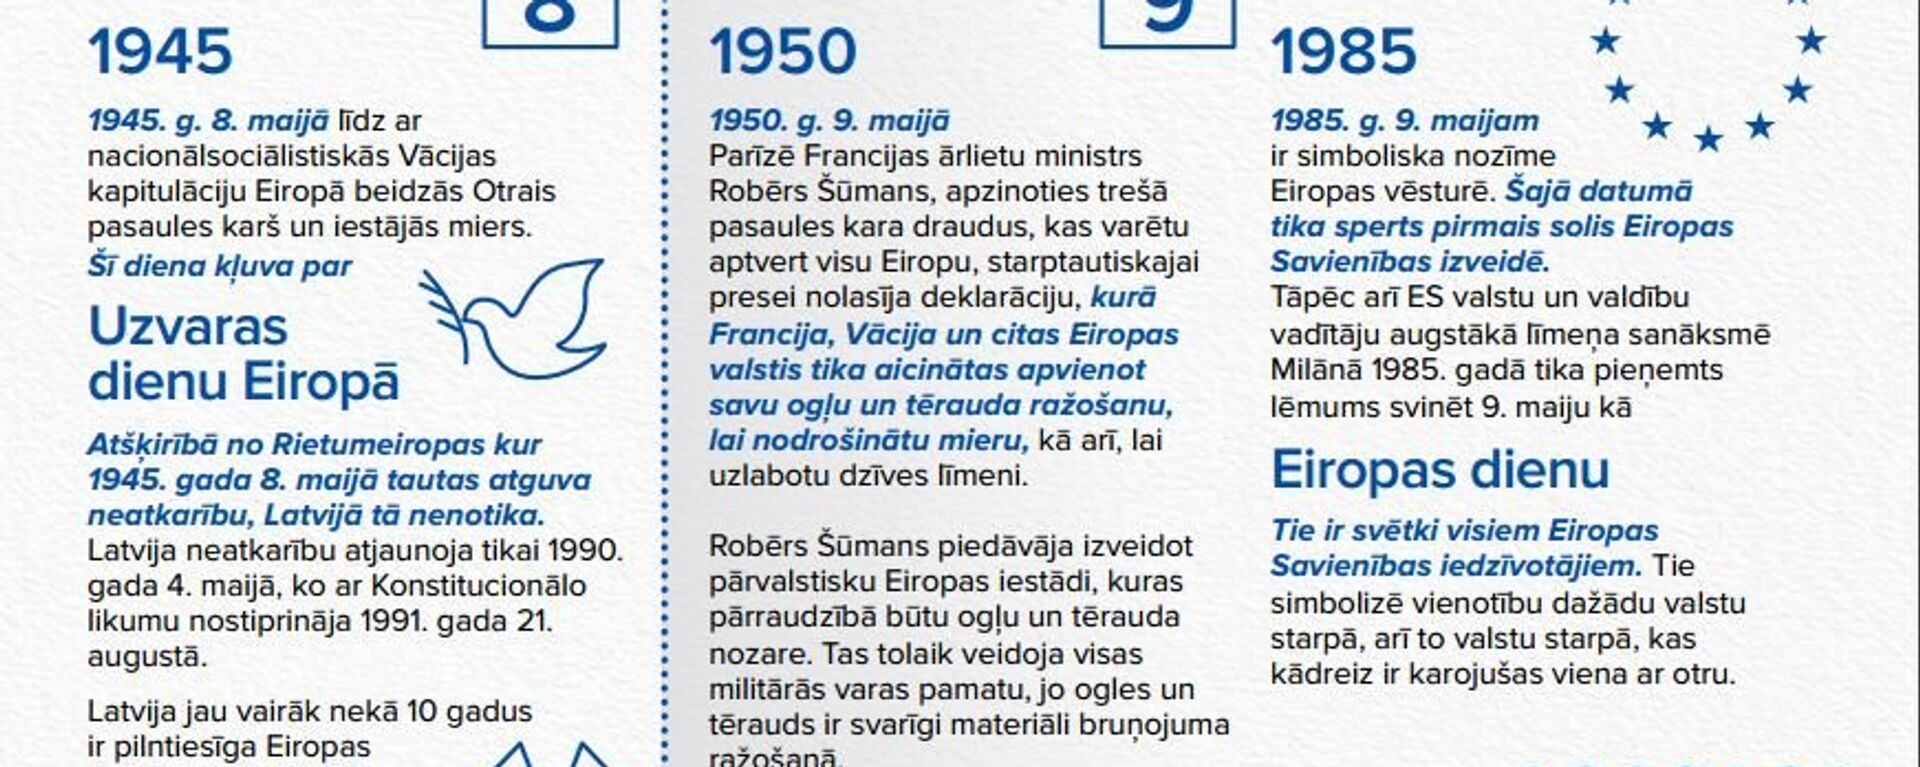 Инфографика, что в Латвии и в мире отмечали 8 и 9 мая - Sputnik Латвия, 1920, 08.05.2017